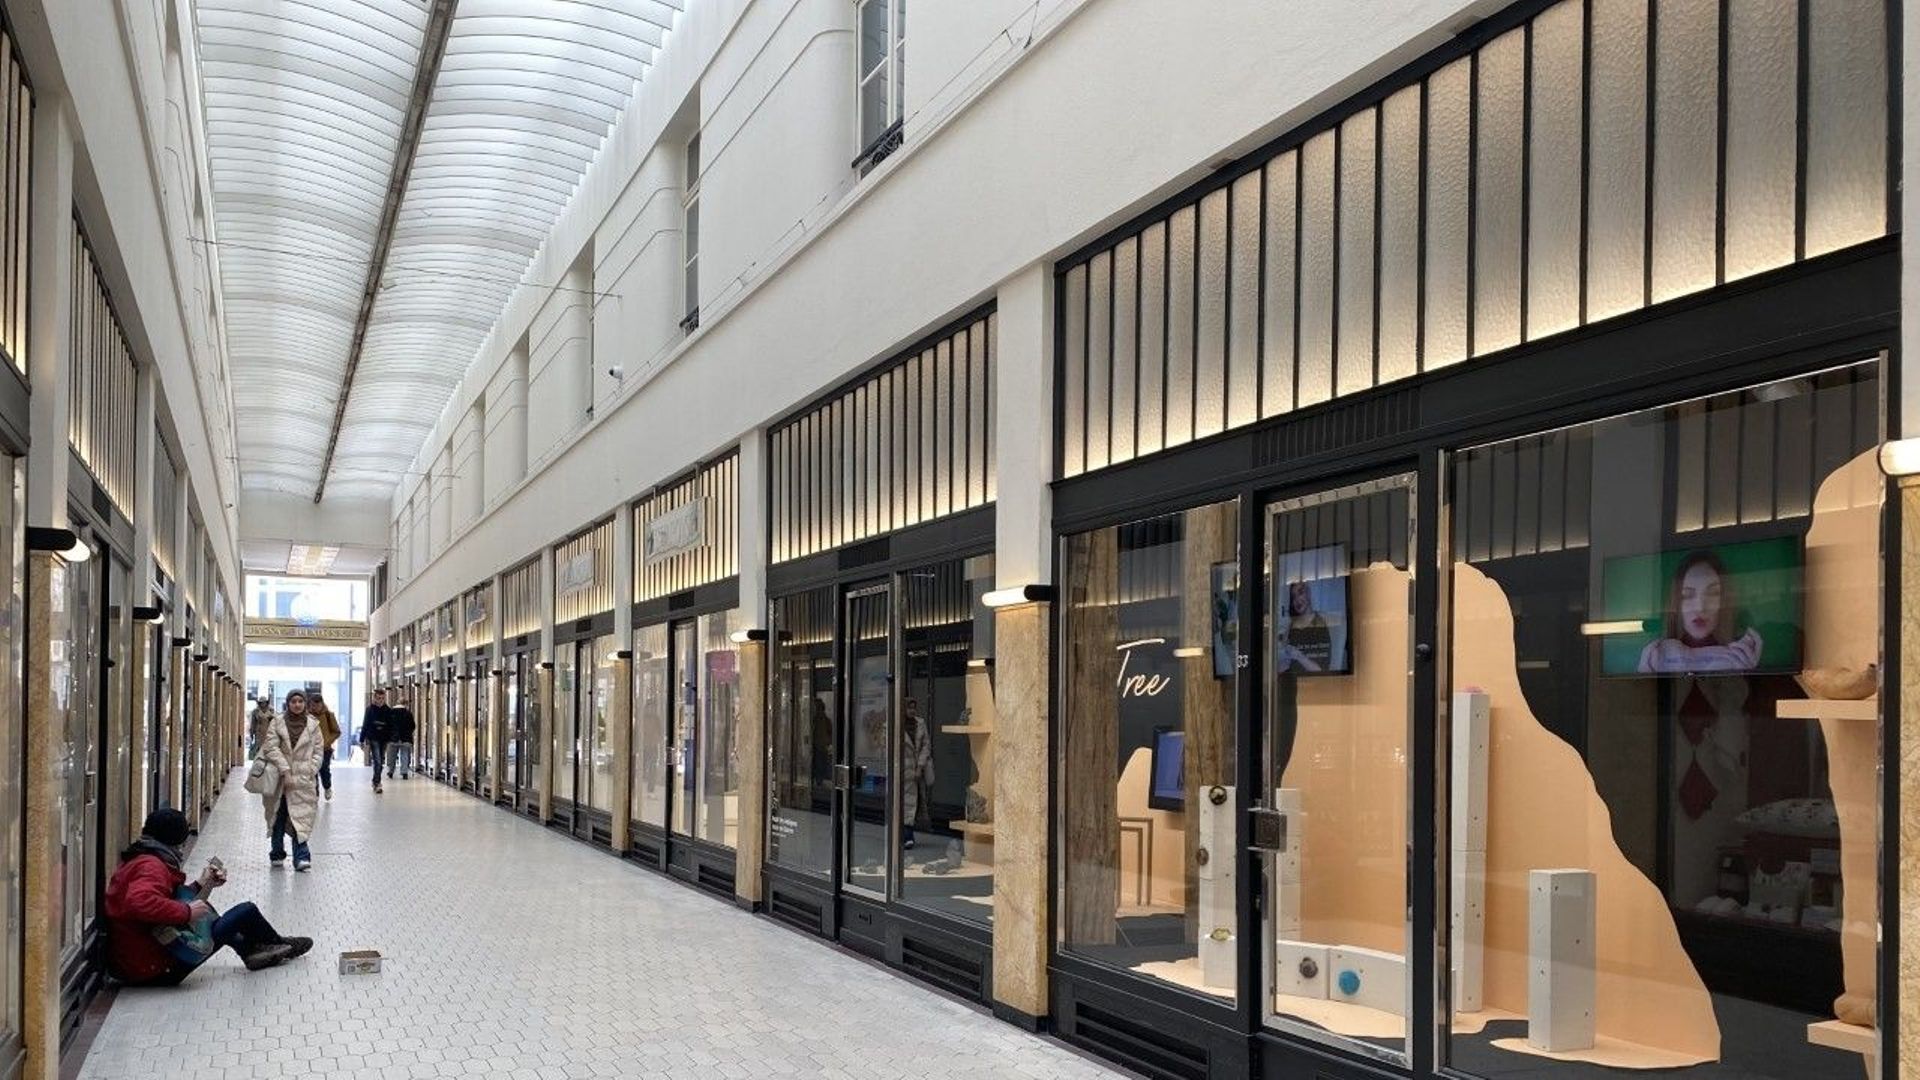 Quel 'Avenir' pour le centre-ville de Liège ? De faux magasins s'installent  pour colorer les vitrines de commerces vides 